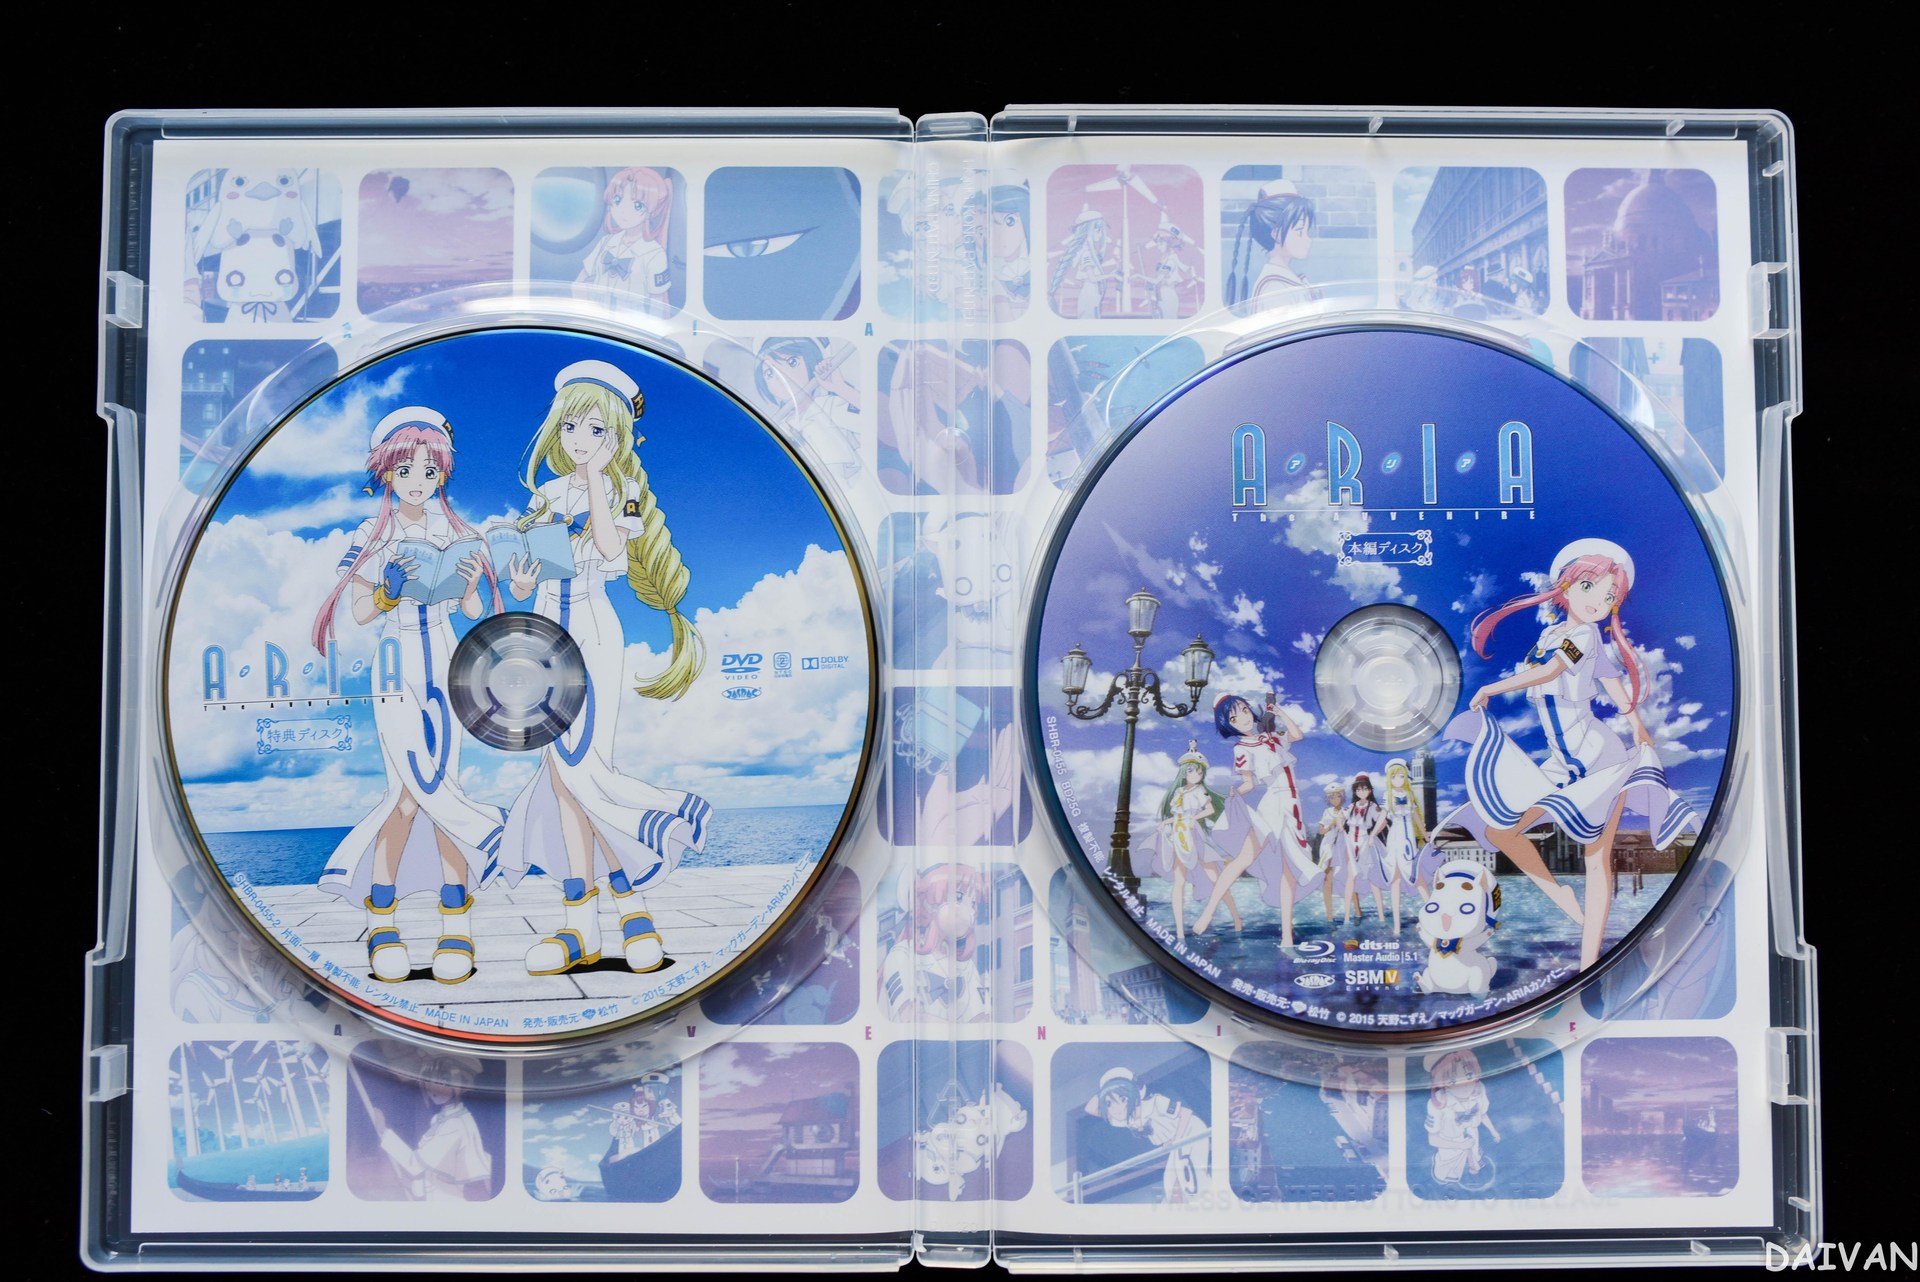 達人專欄] 開箱ARIA The ORIGINATION Blu-ray BOX + The AVVENIRE BD 